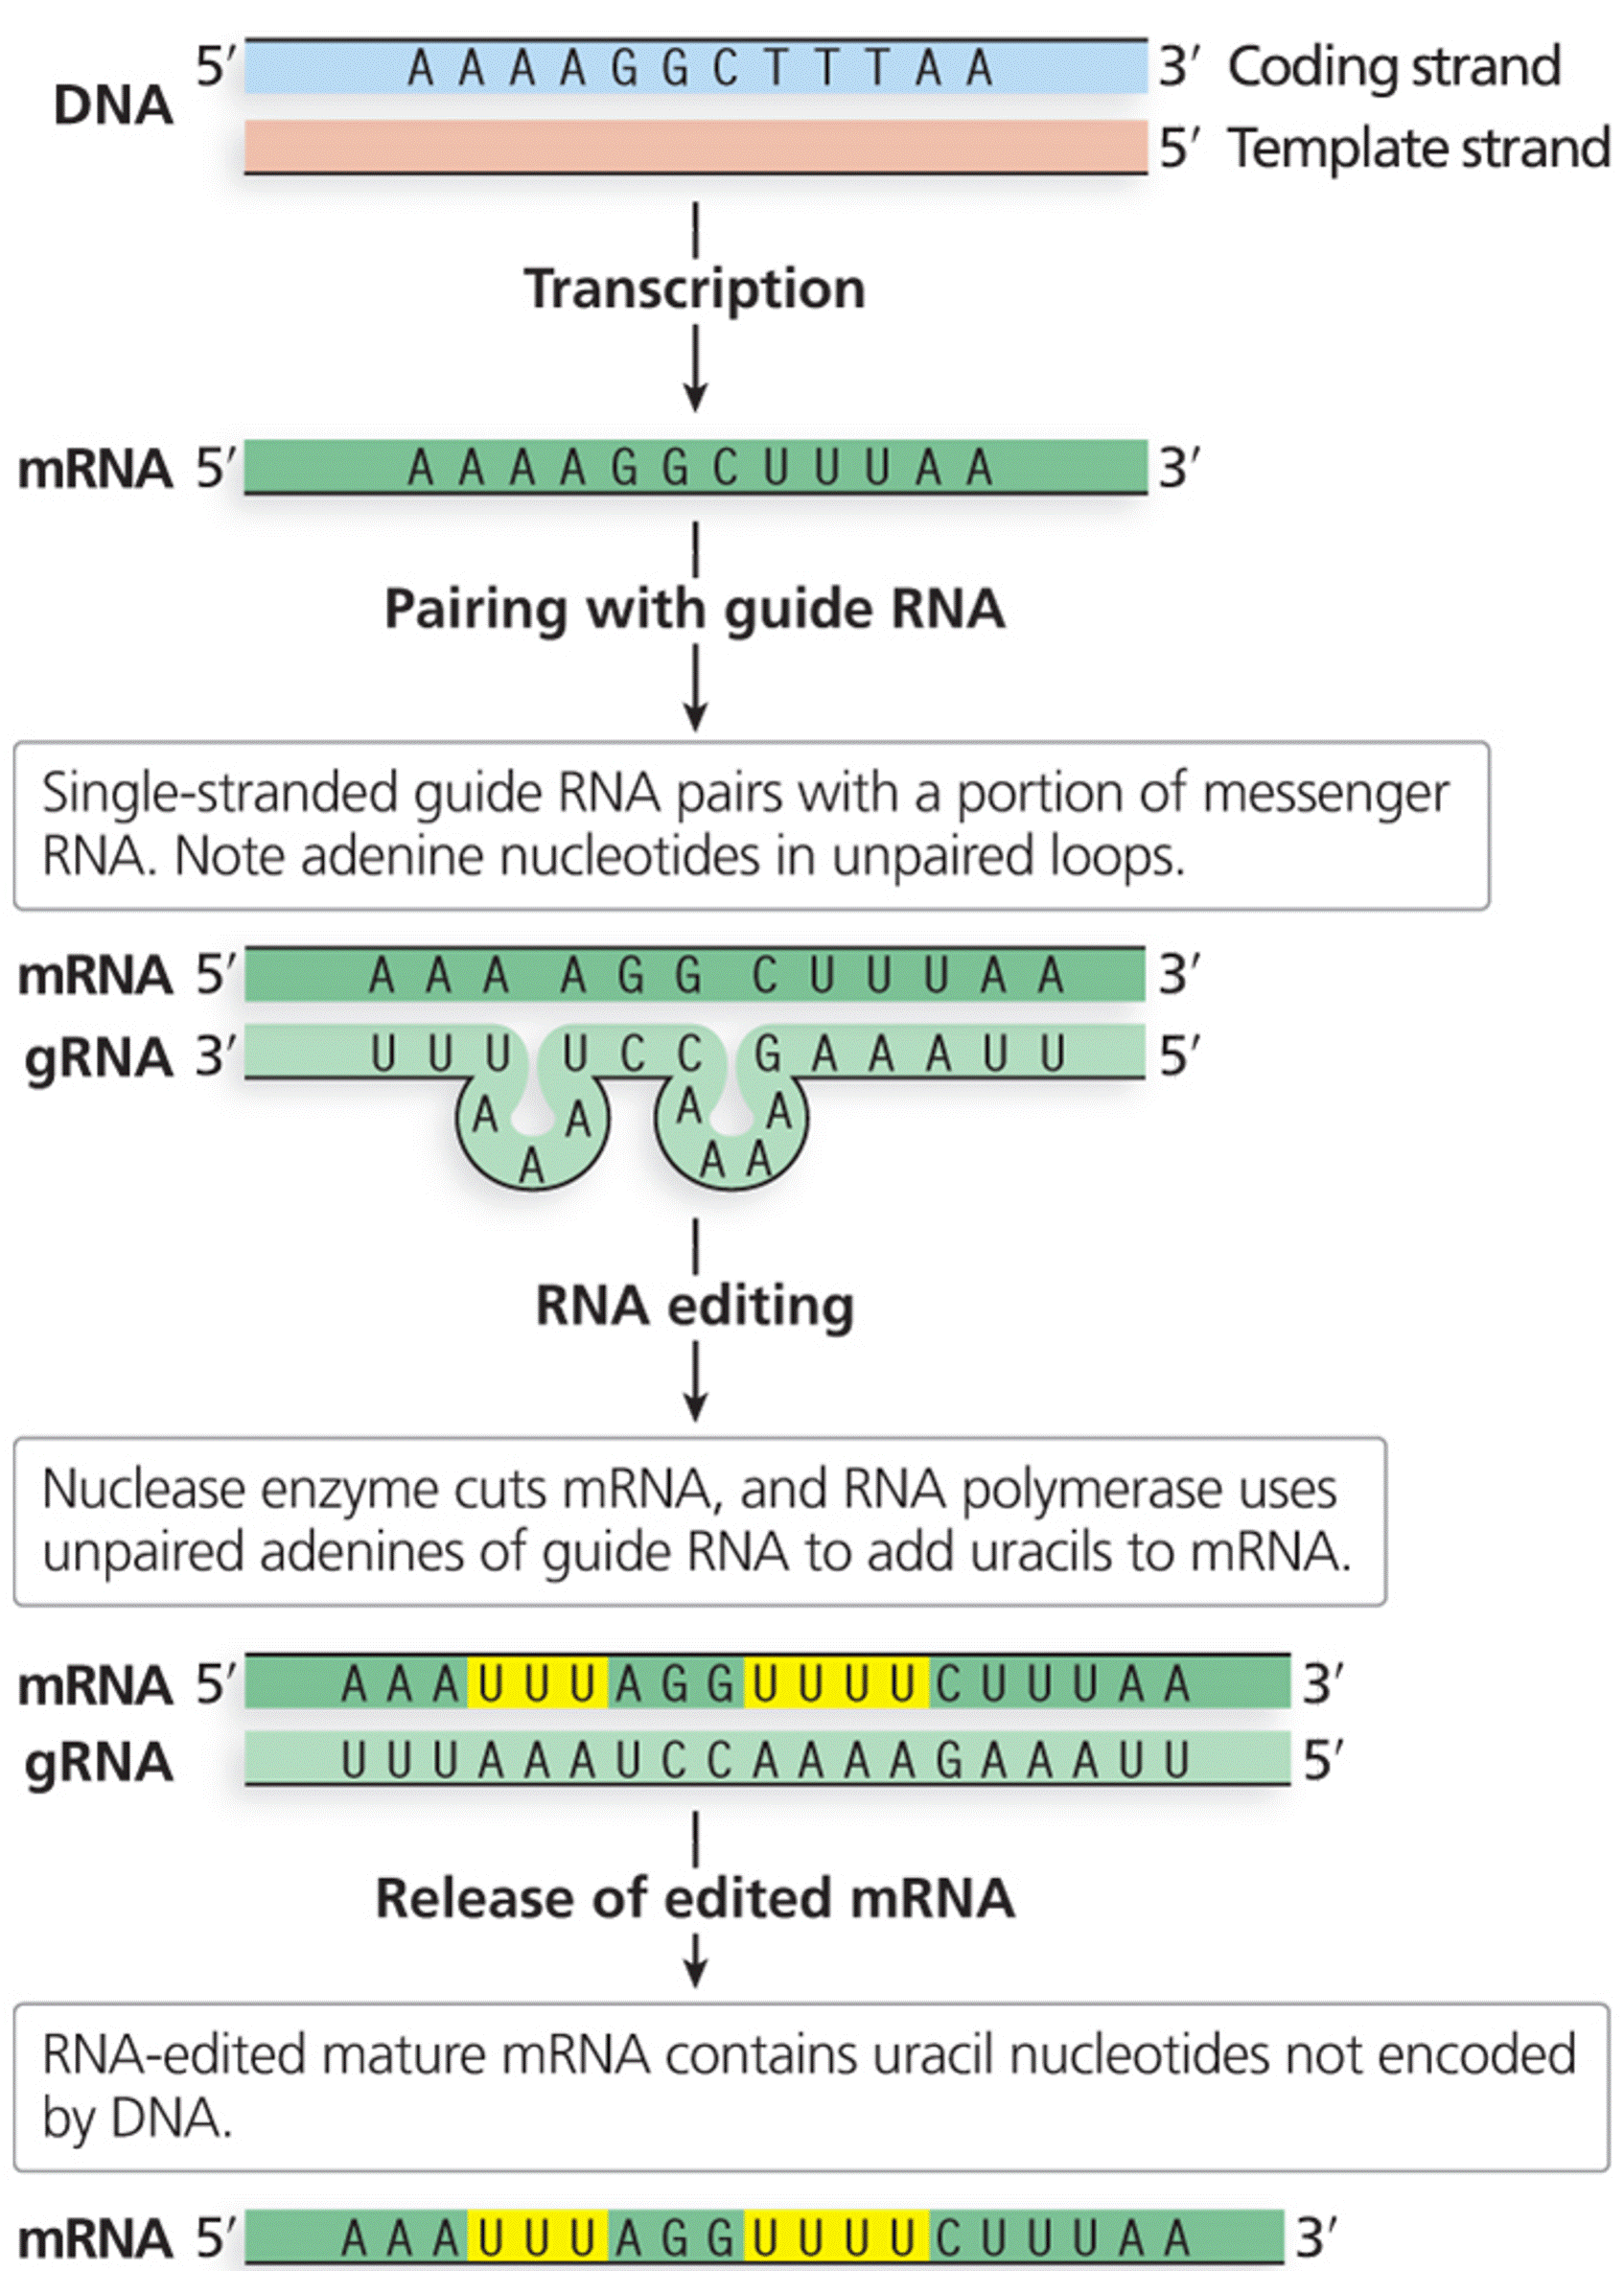 Guide RNA (gRNA) directs RNA editing